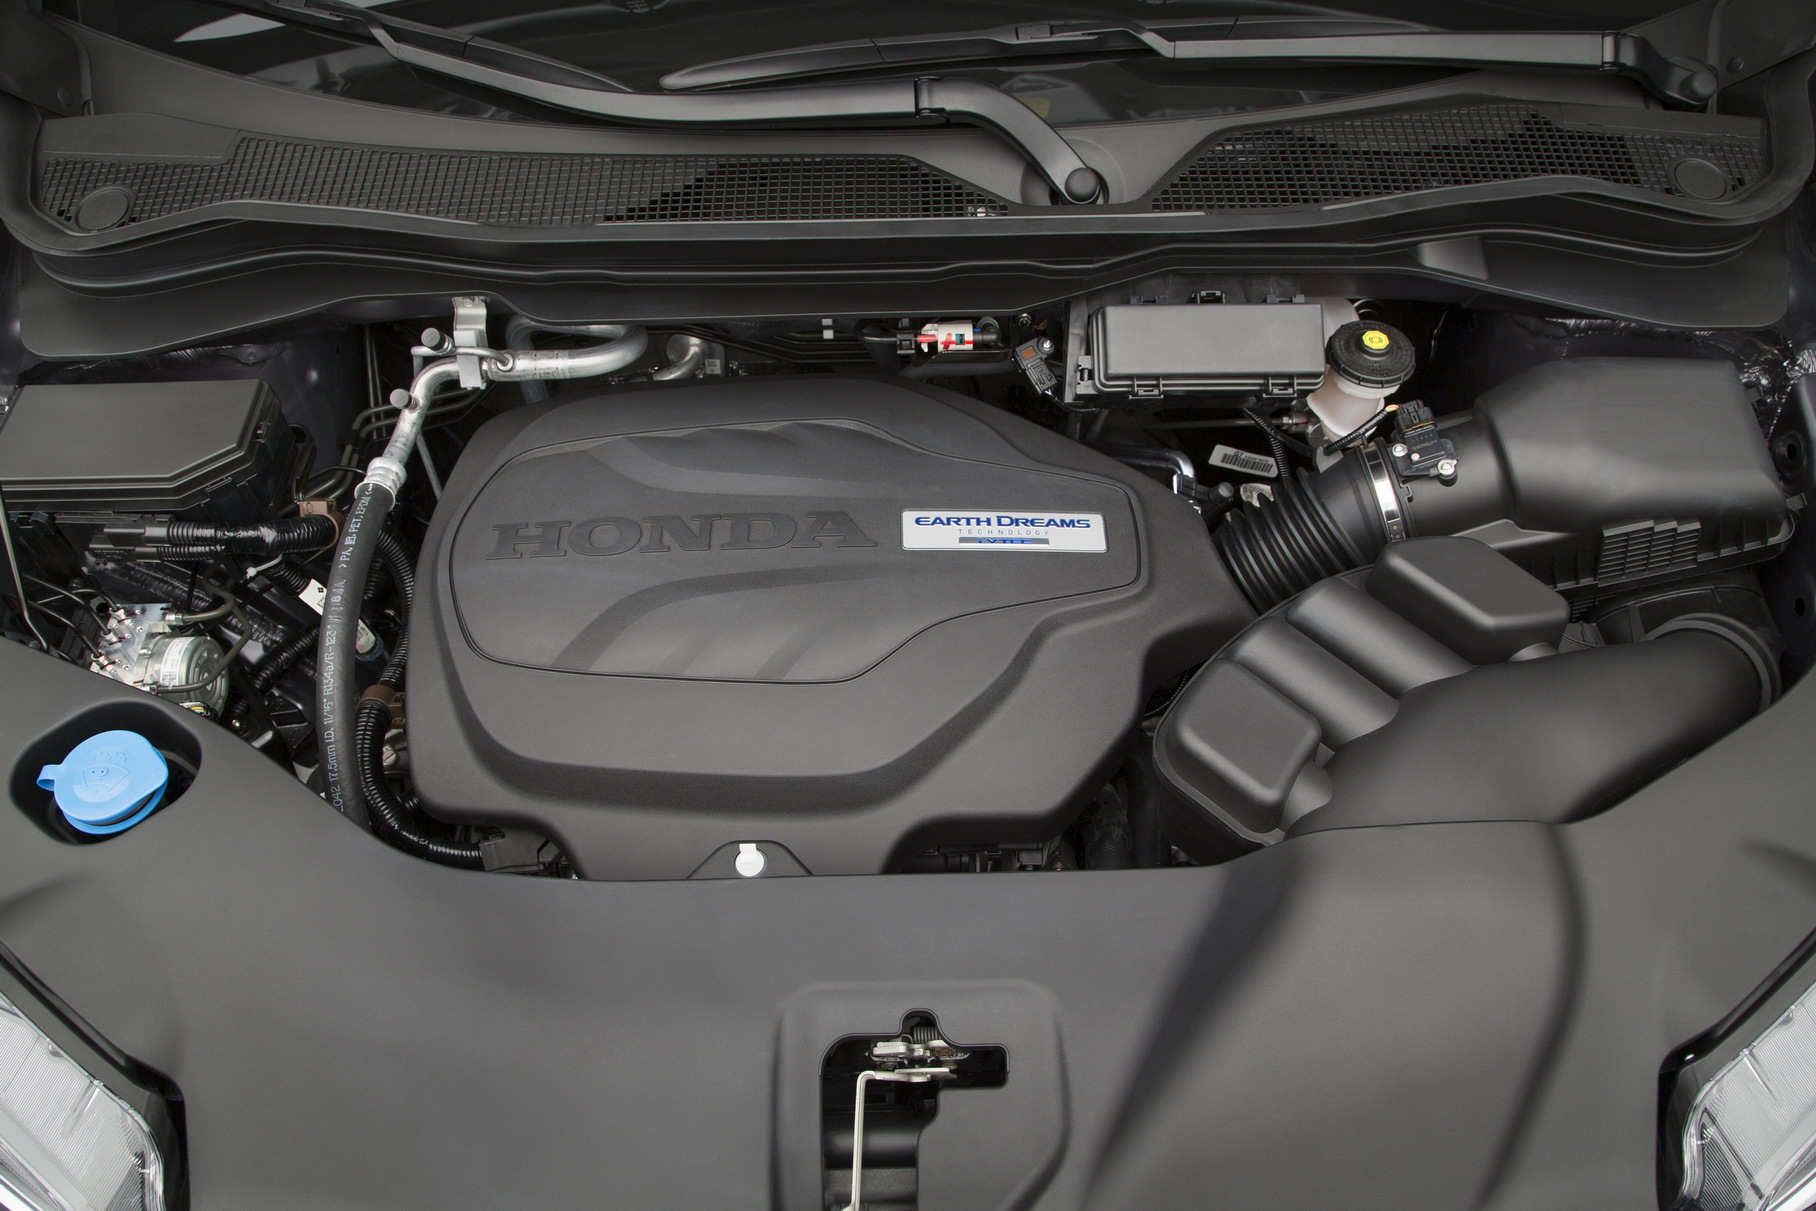 Honda признала производственный дефект мотора V6 3.5